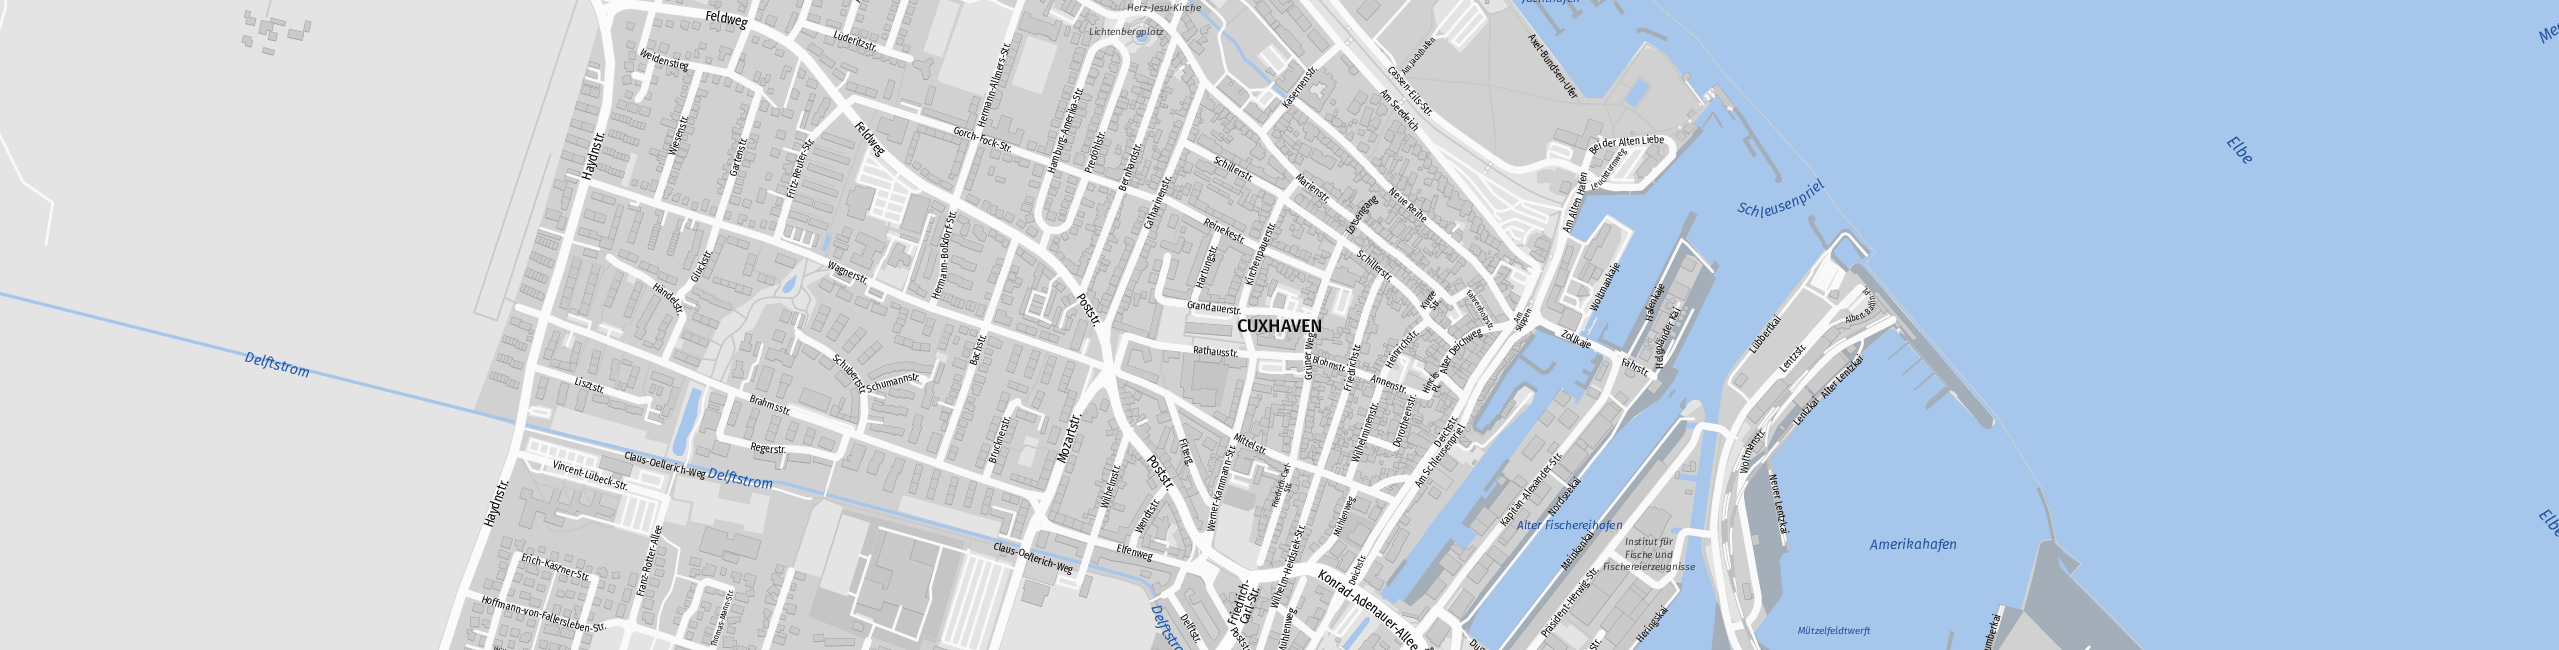 Stadtplan Cuxhaven zum Downloaden.